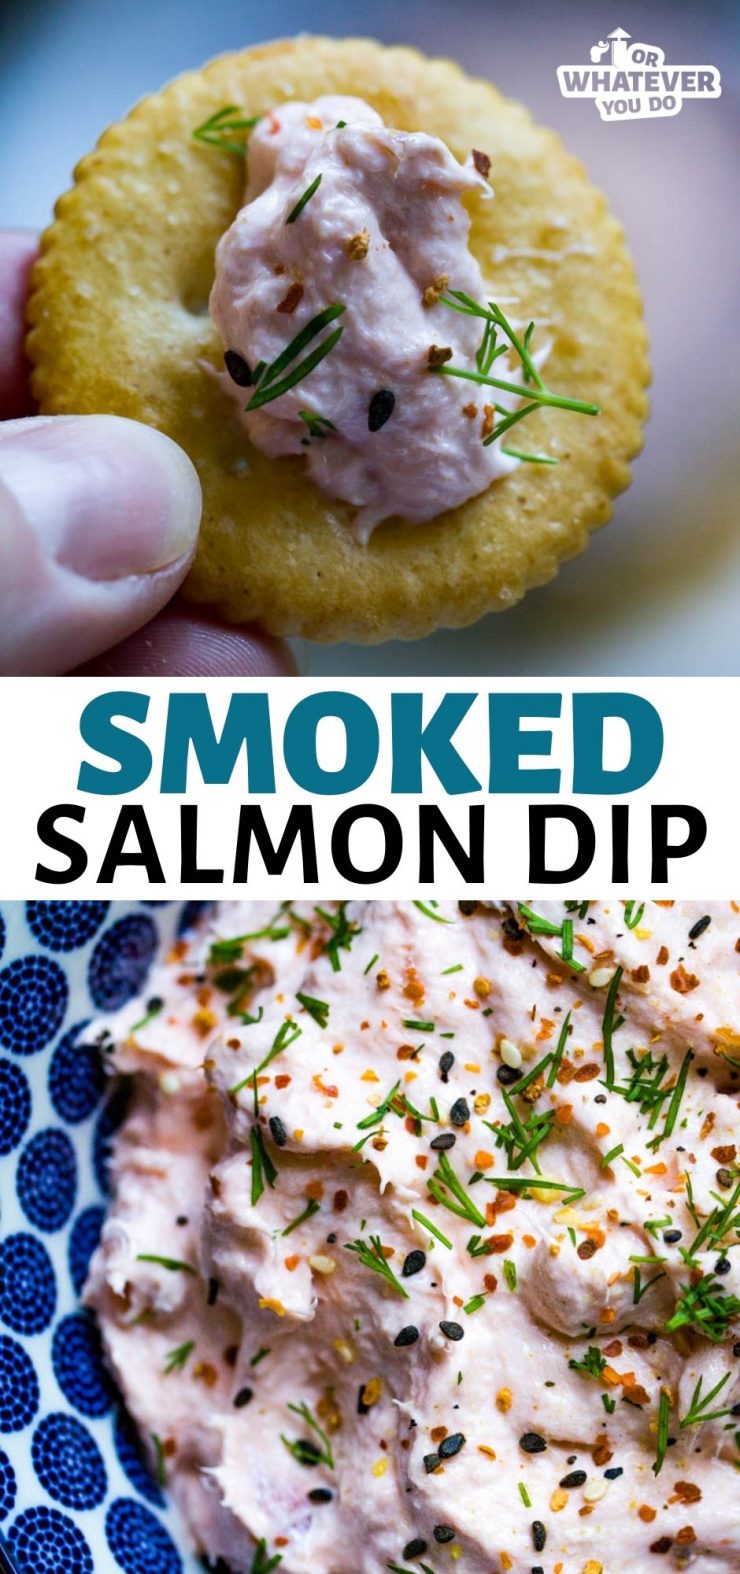 Traeger Smoked Salmon Dip